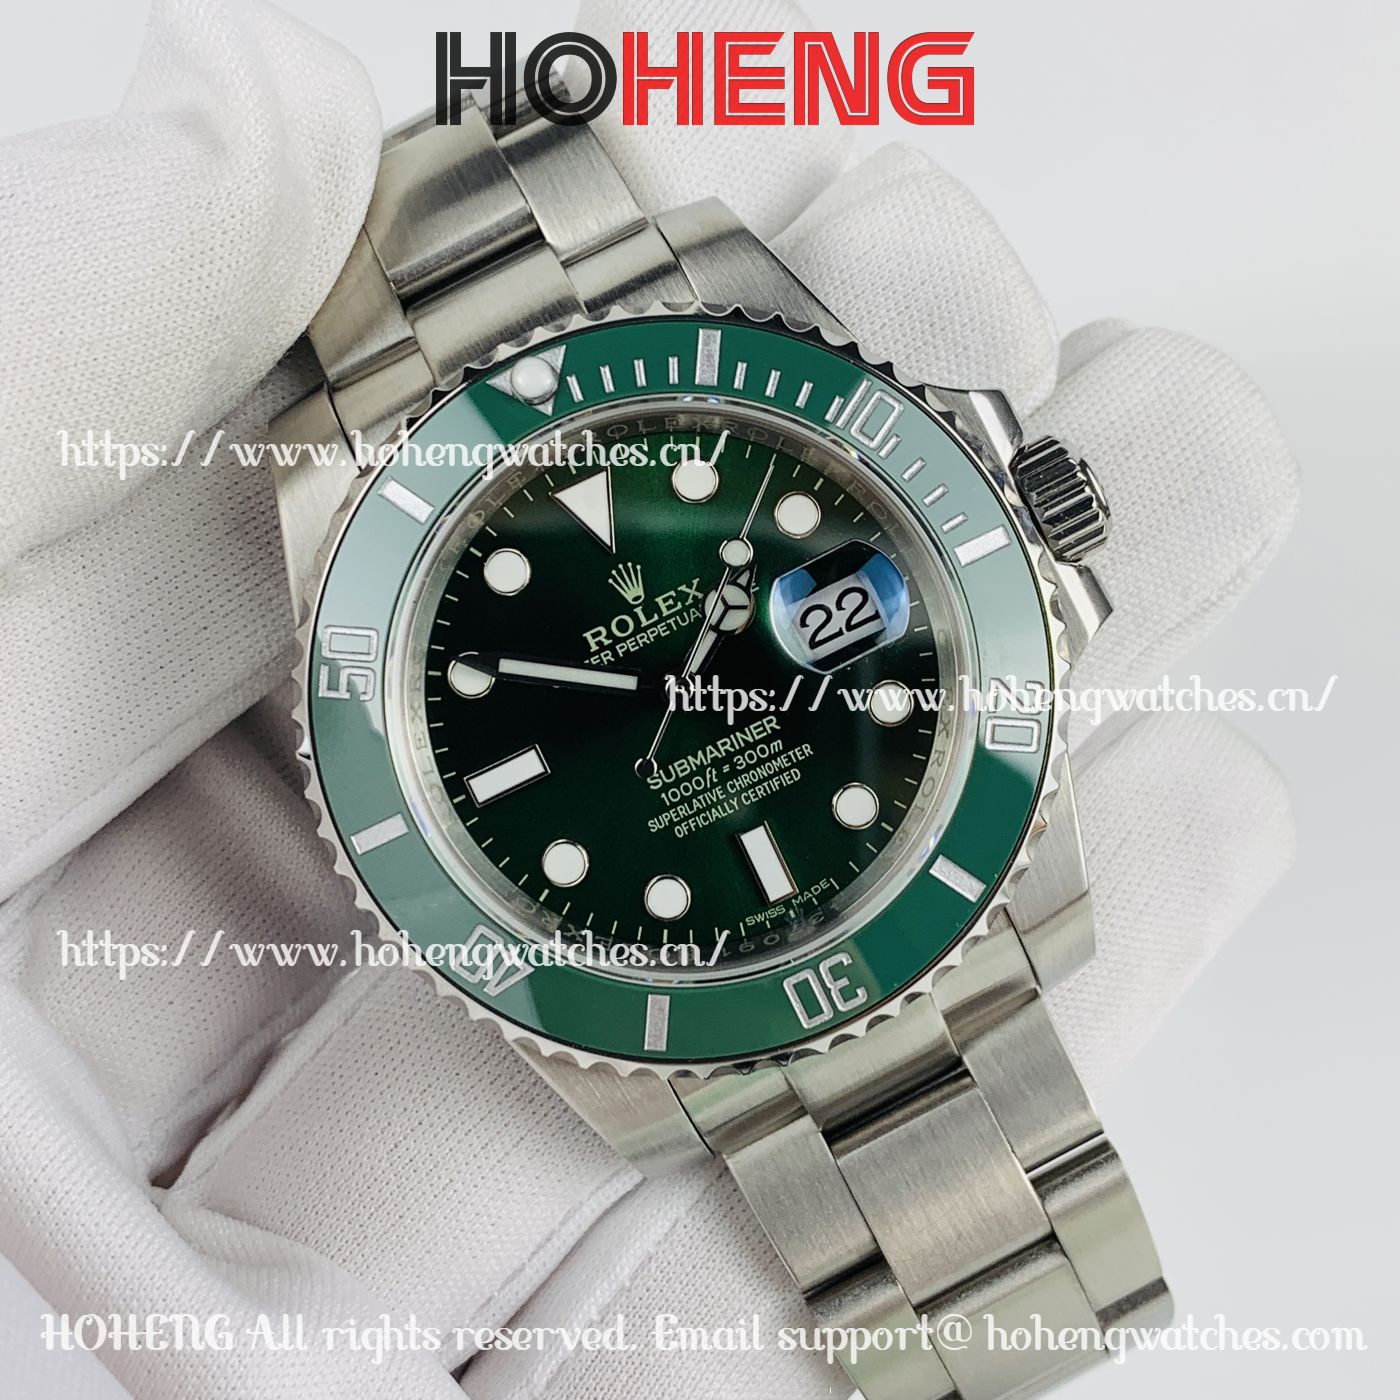 Green Face Rolex Submariner 116610LV Hulk